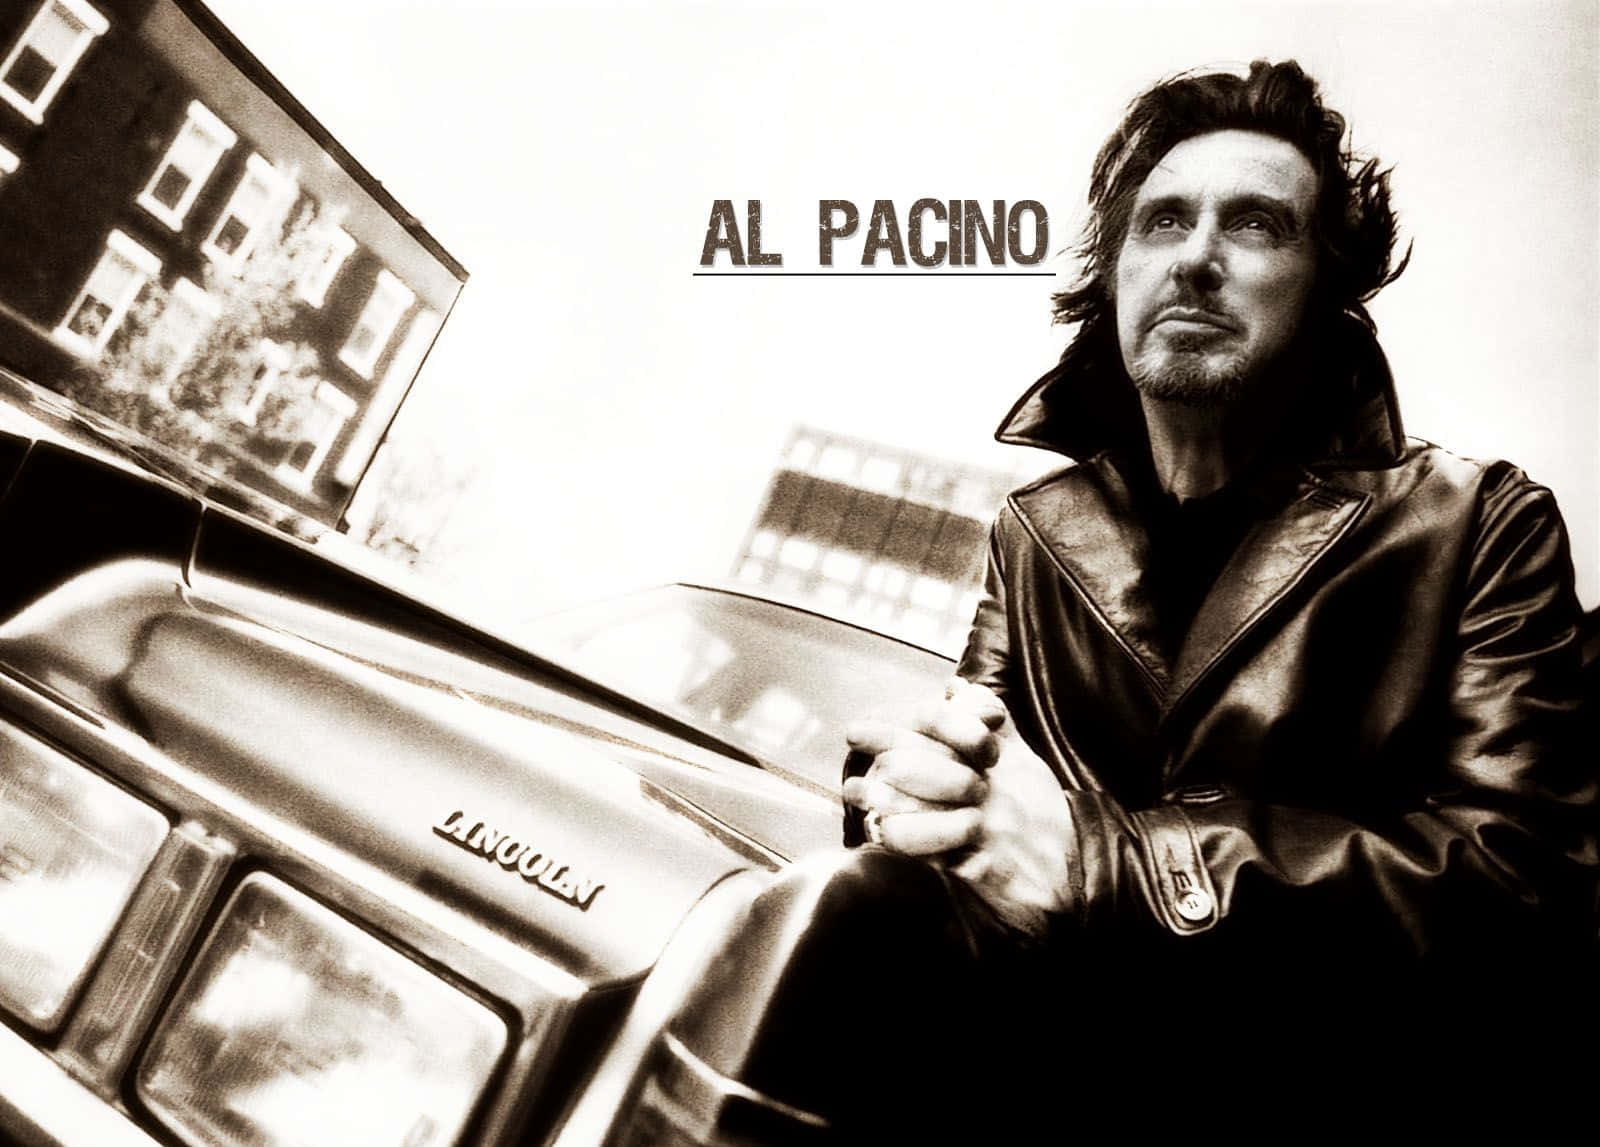 Al Pacino, American actor and filmmaker